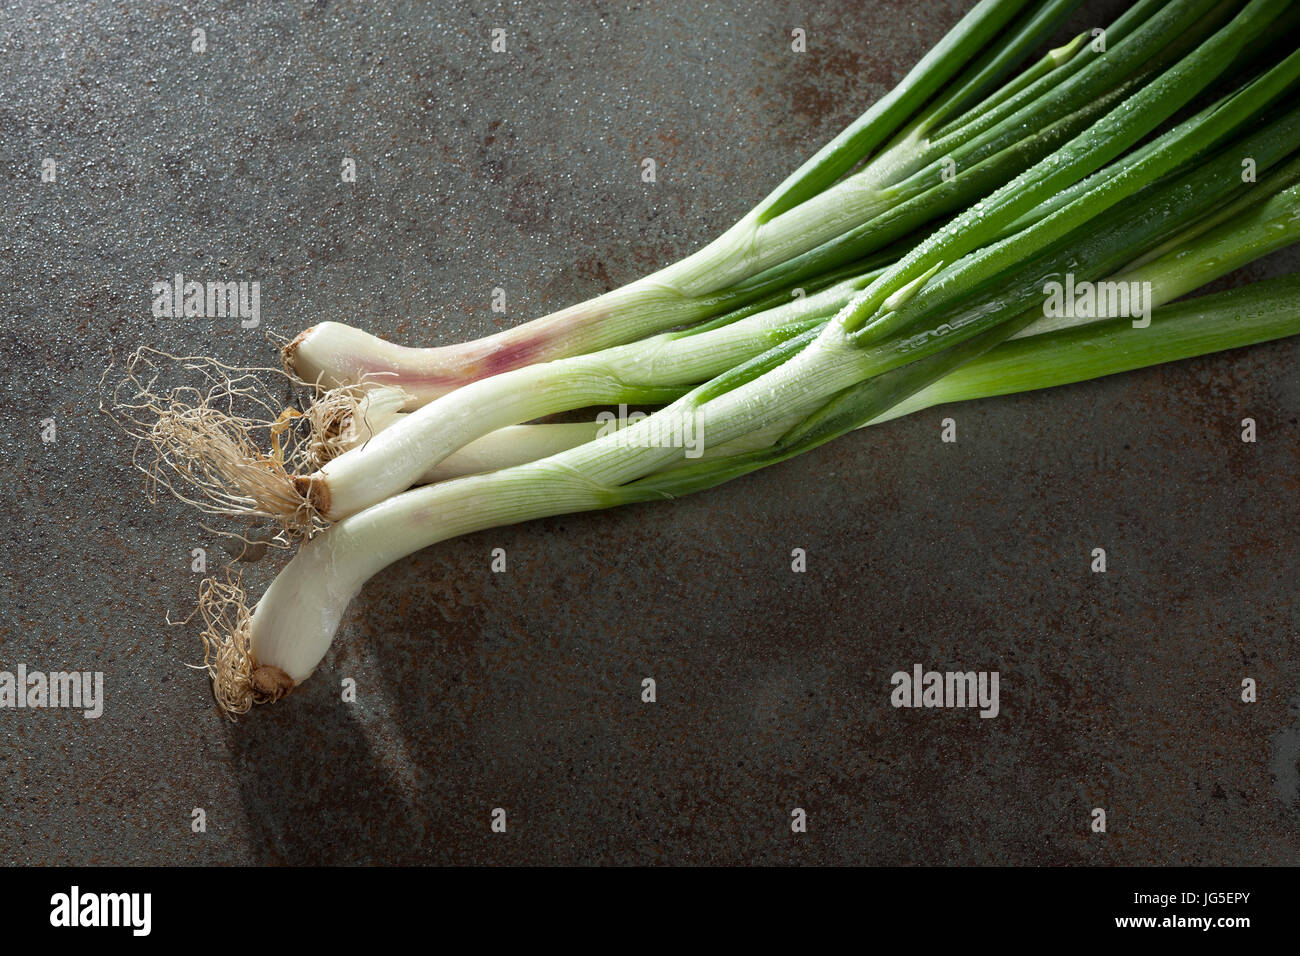 Frische grüne Zwiebel Stiele mit Wassertropfen auf Glaskeramik-Kochfeld-Hintergrund Stockfoto